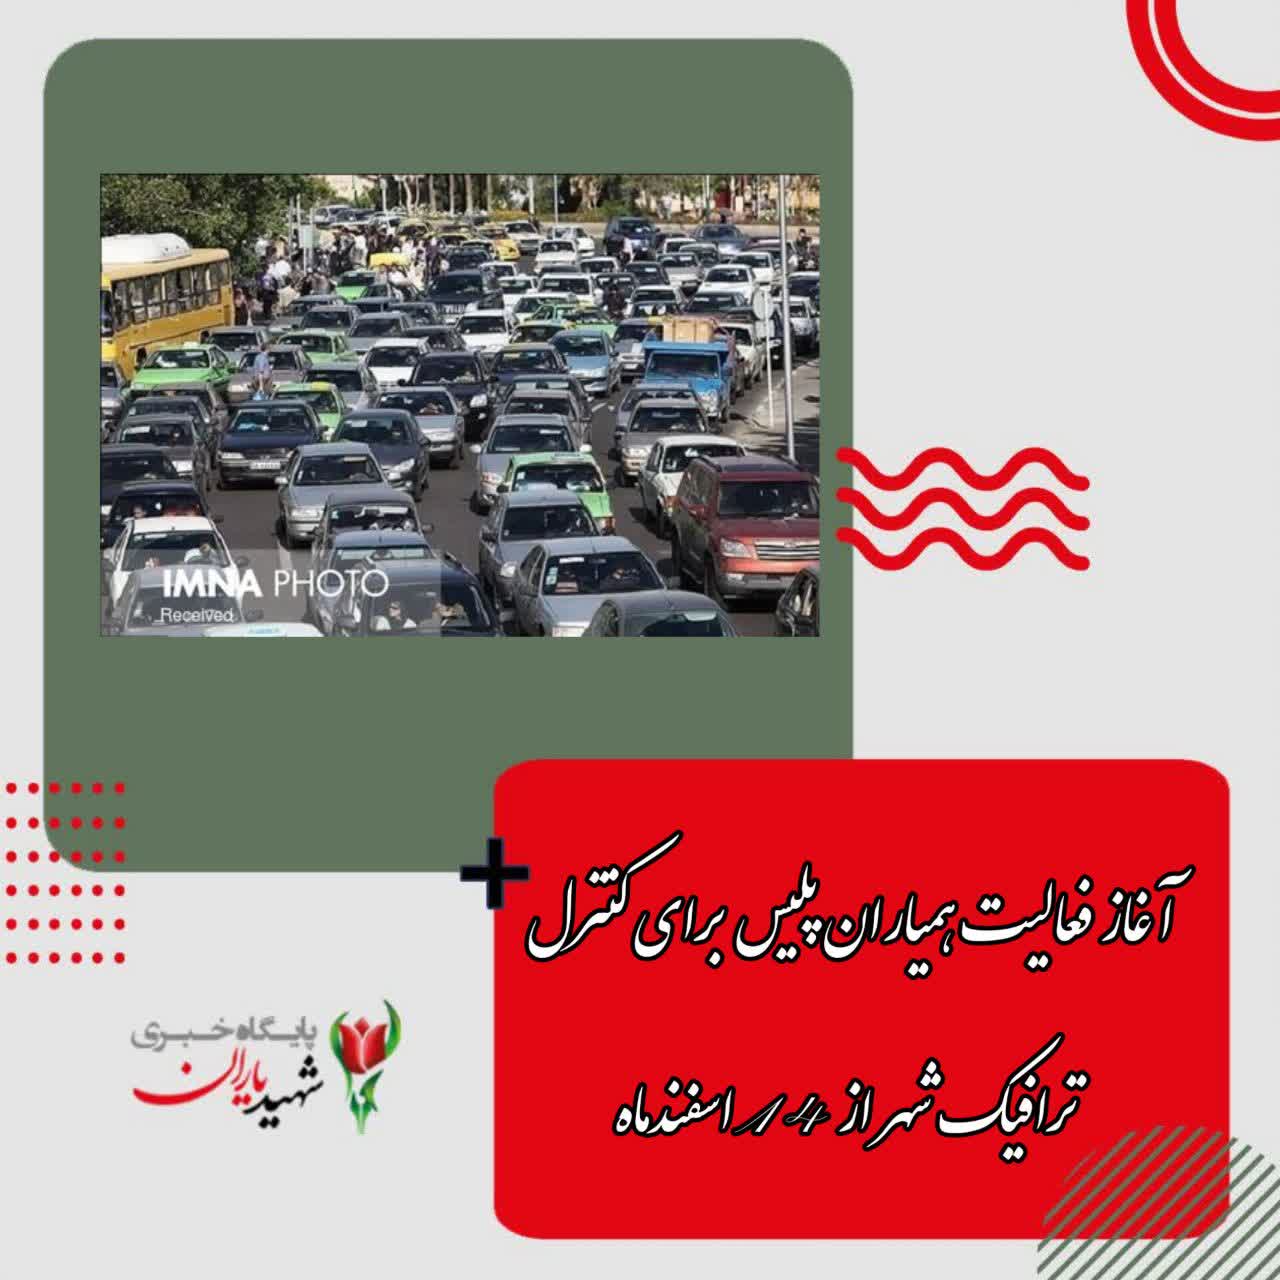 مدیرکل امور اجرایی معاونت حمل و نقل و ترافیک شهرداری اصفهان خبر داد: